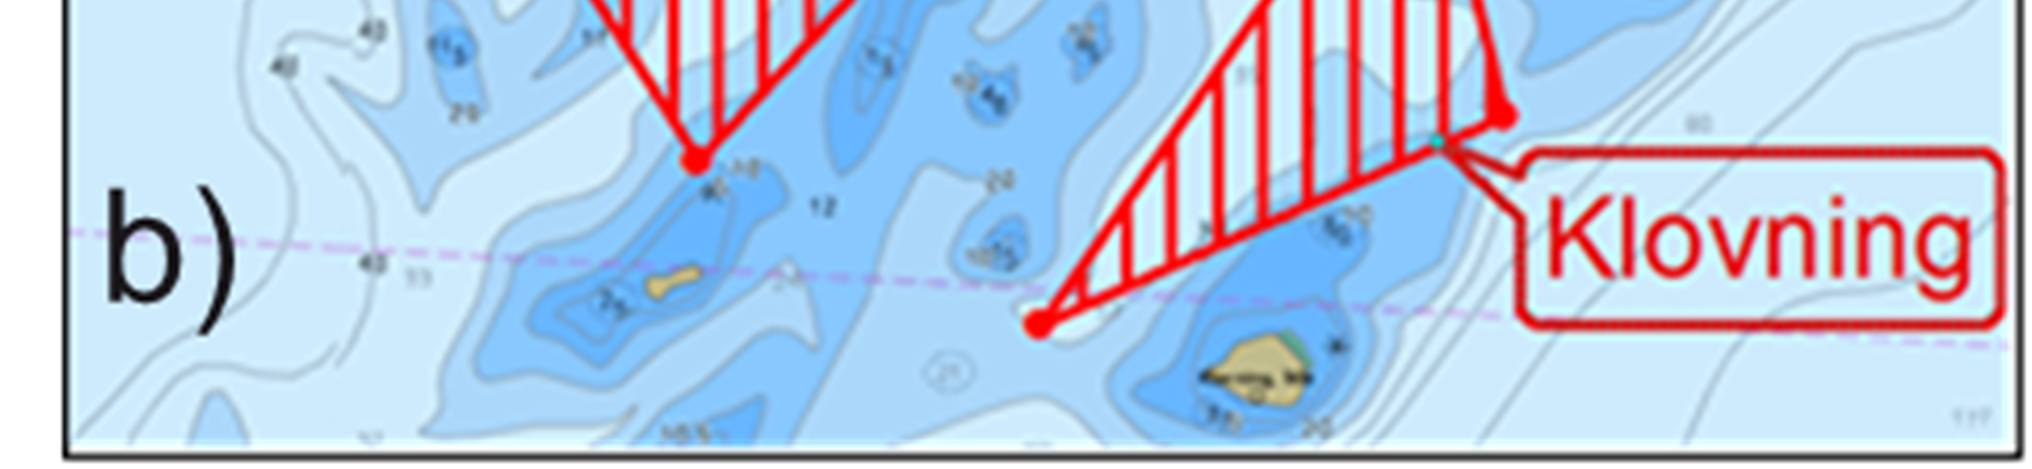 Side 6/11 Områda "Utfatet sør" og "Klovning", vist på figur 2 b, ligg rett sør for "Utfatet", i det generelle fleirbruksområdet (pbl 11-7 nr. 6 Bruk og vern av sjø og vassdrag). Figur 2.